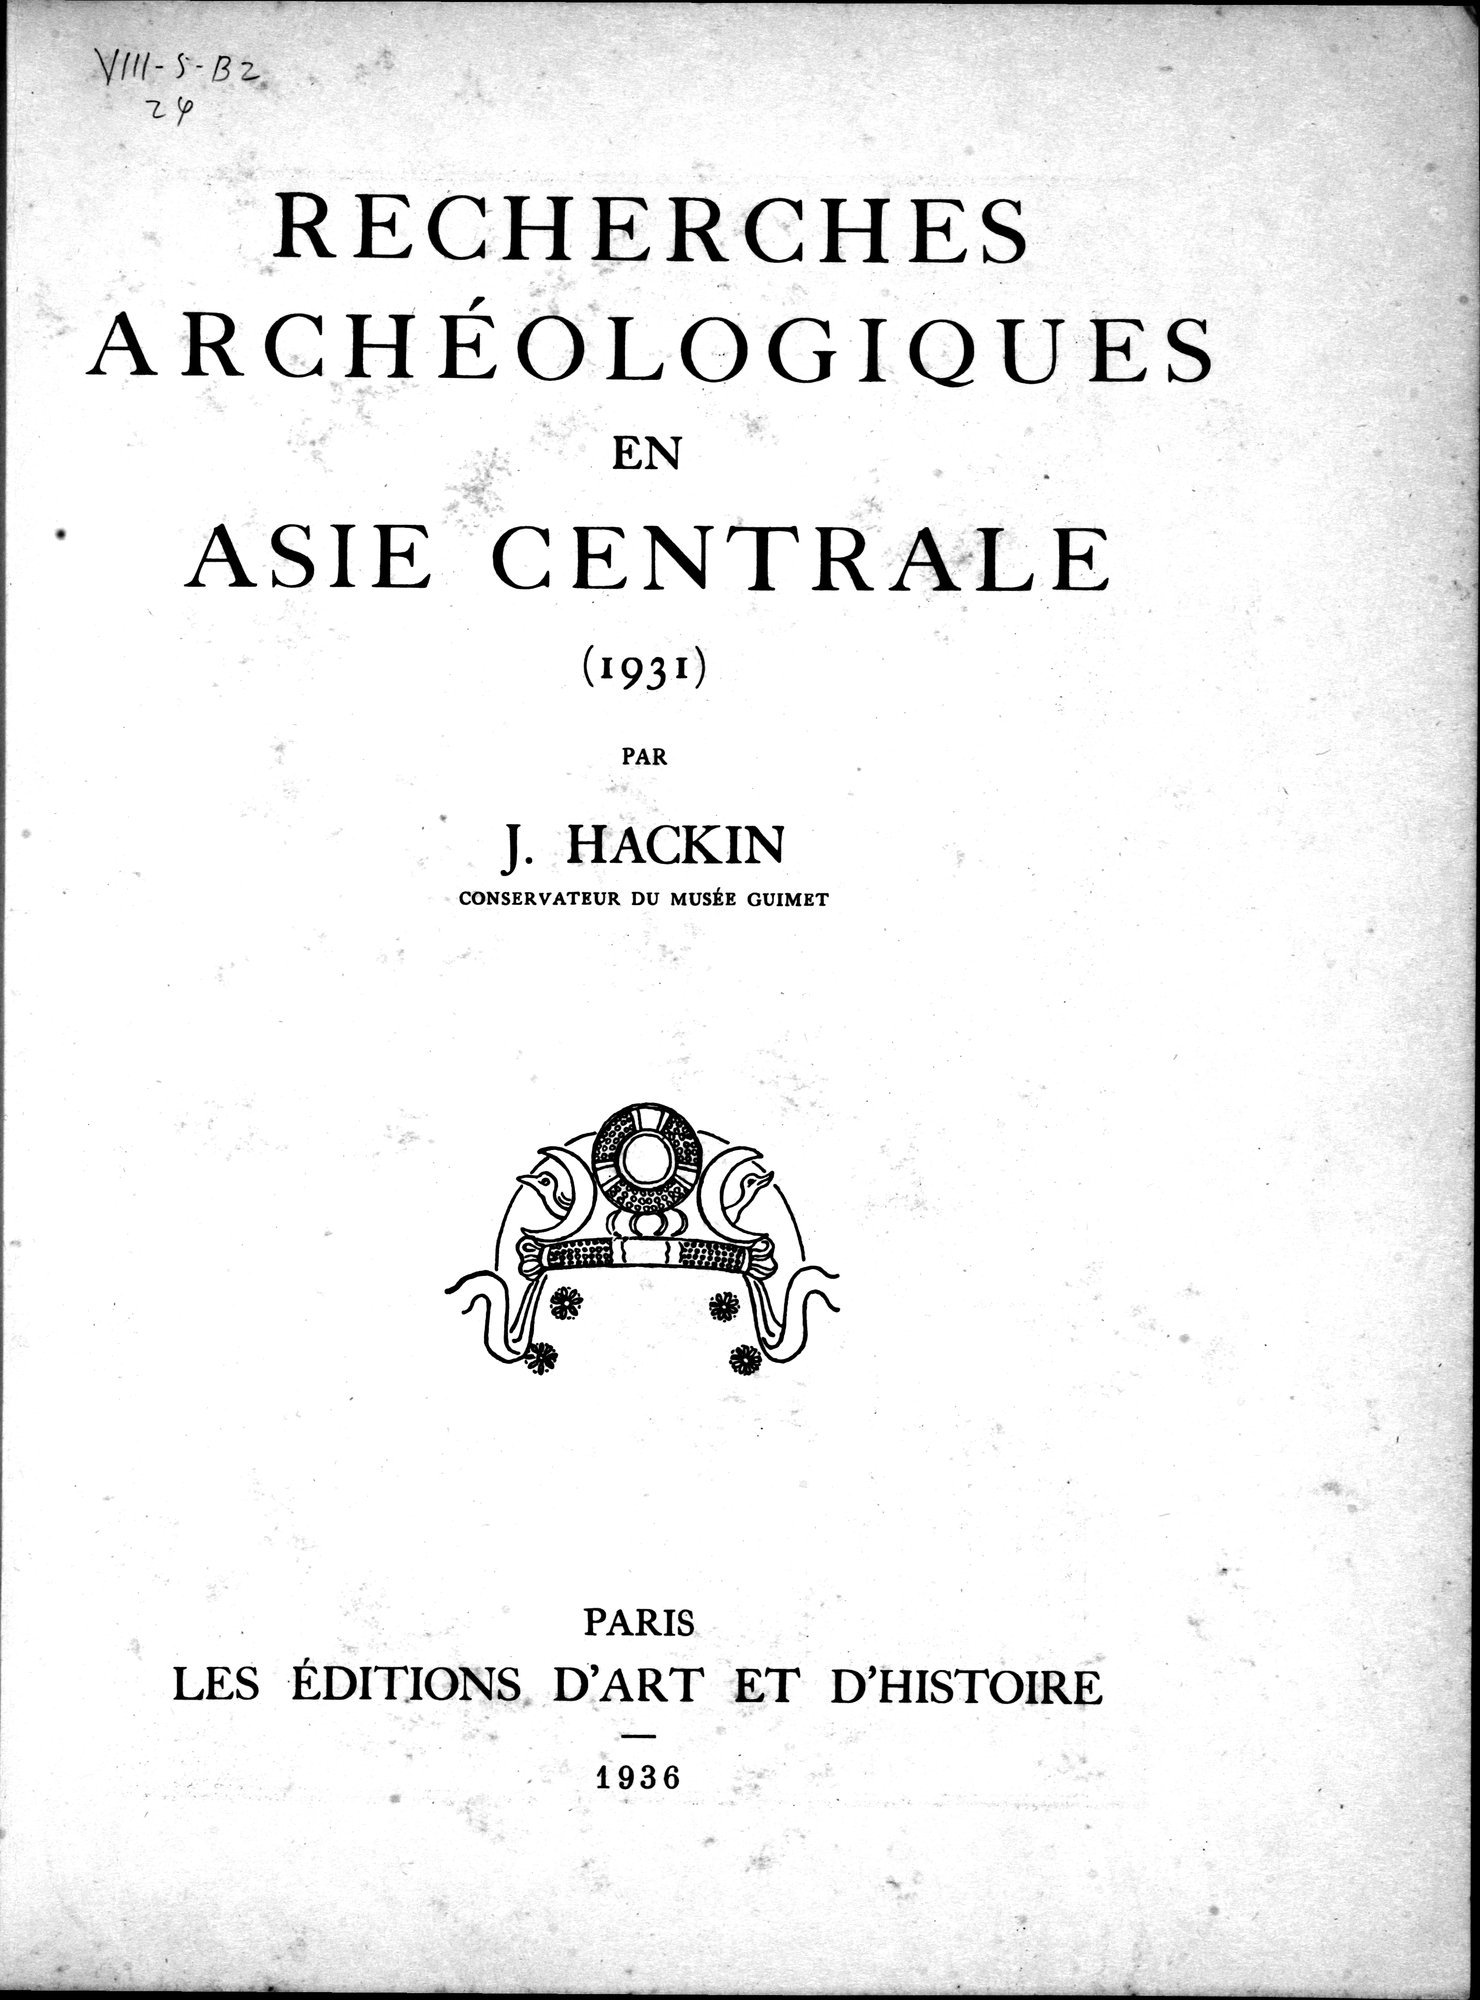 Recherches Archéologiques en Asie Centrale (1931) : vol.1 / Page 9 (Grayscale High Resolution Image)